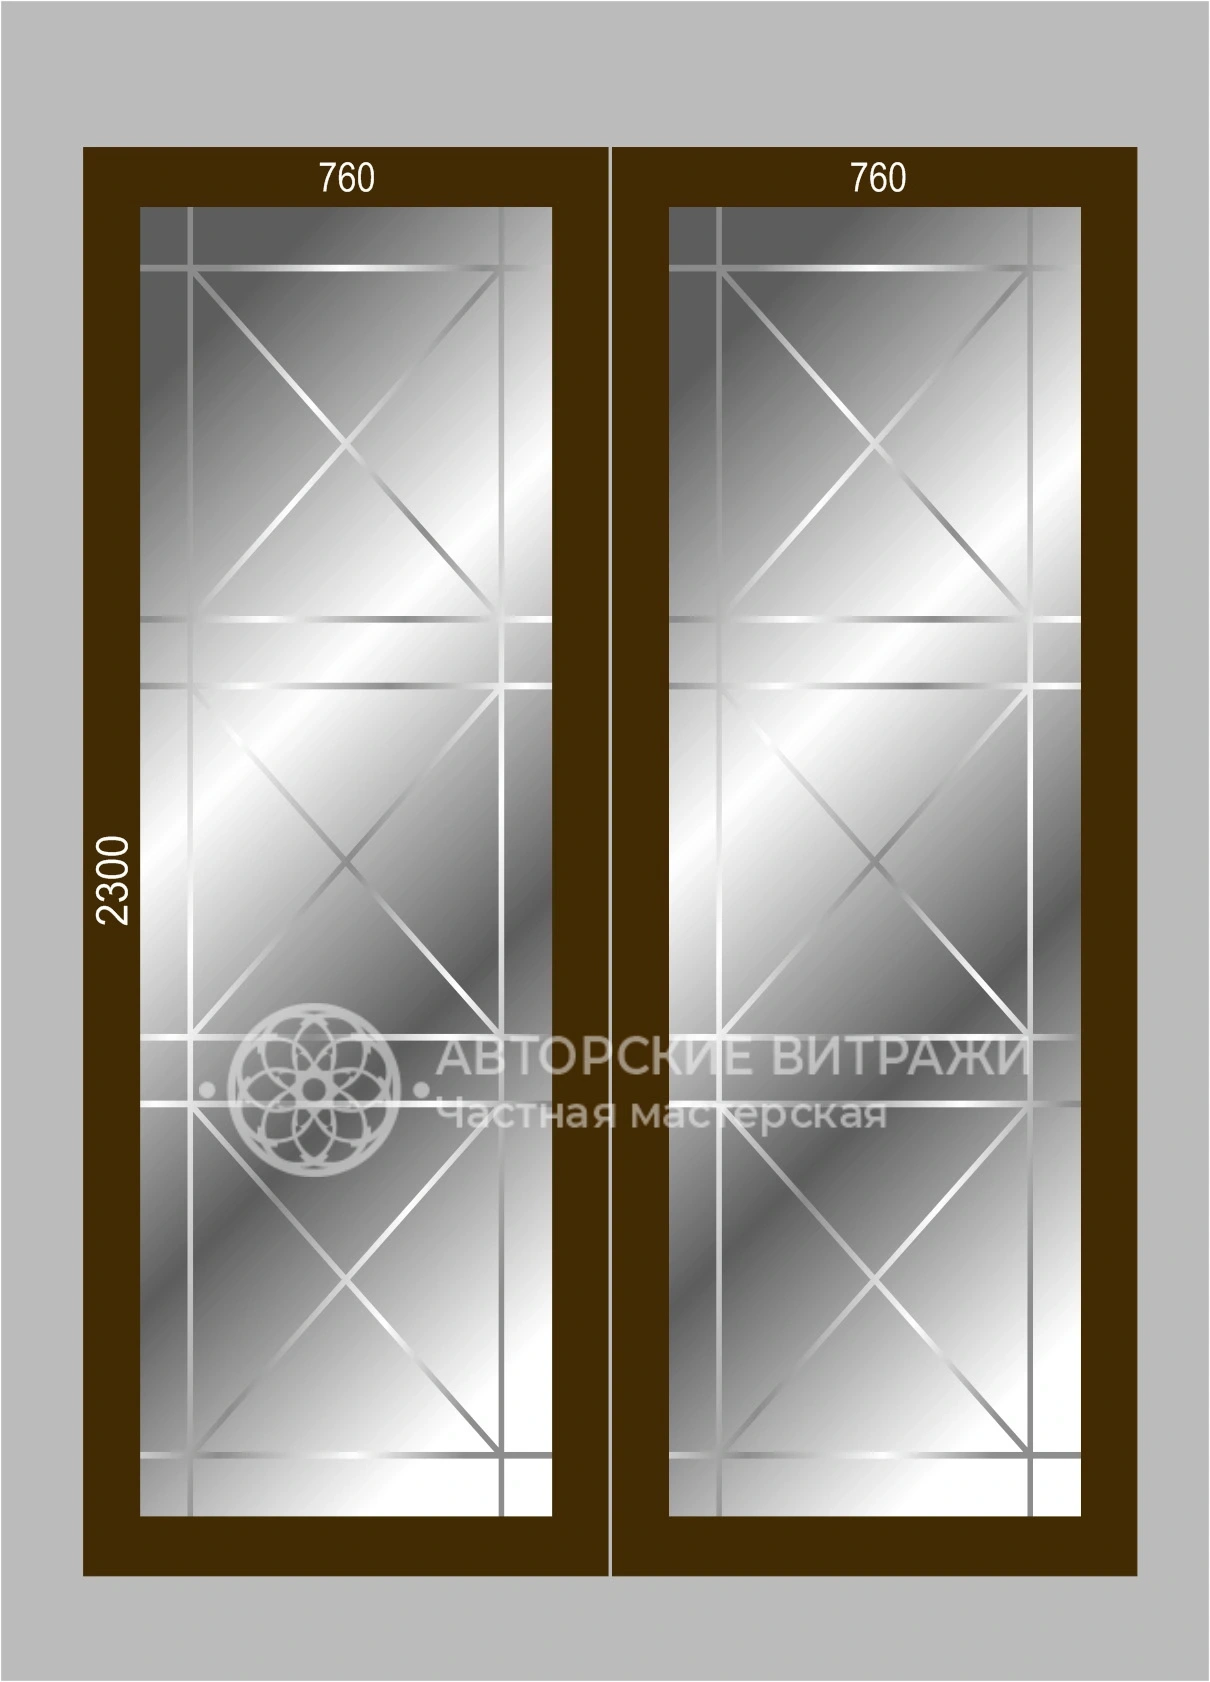 Эскиз раздвижных дверей с зеркалом 2300х760 - 2 шт.  с алмазной гравировкой V 6мм